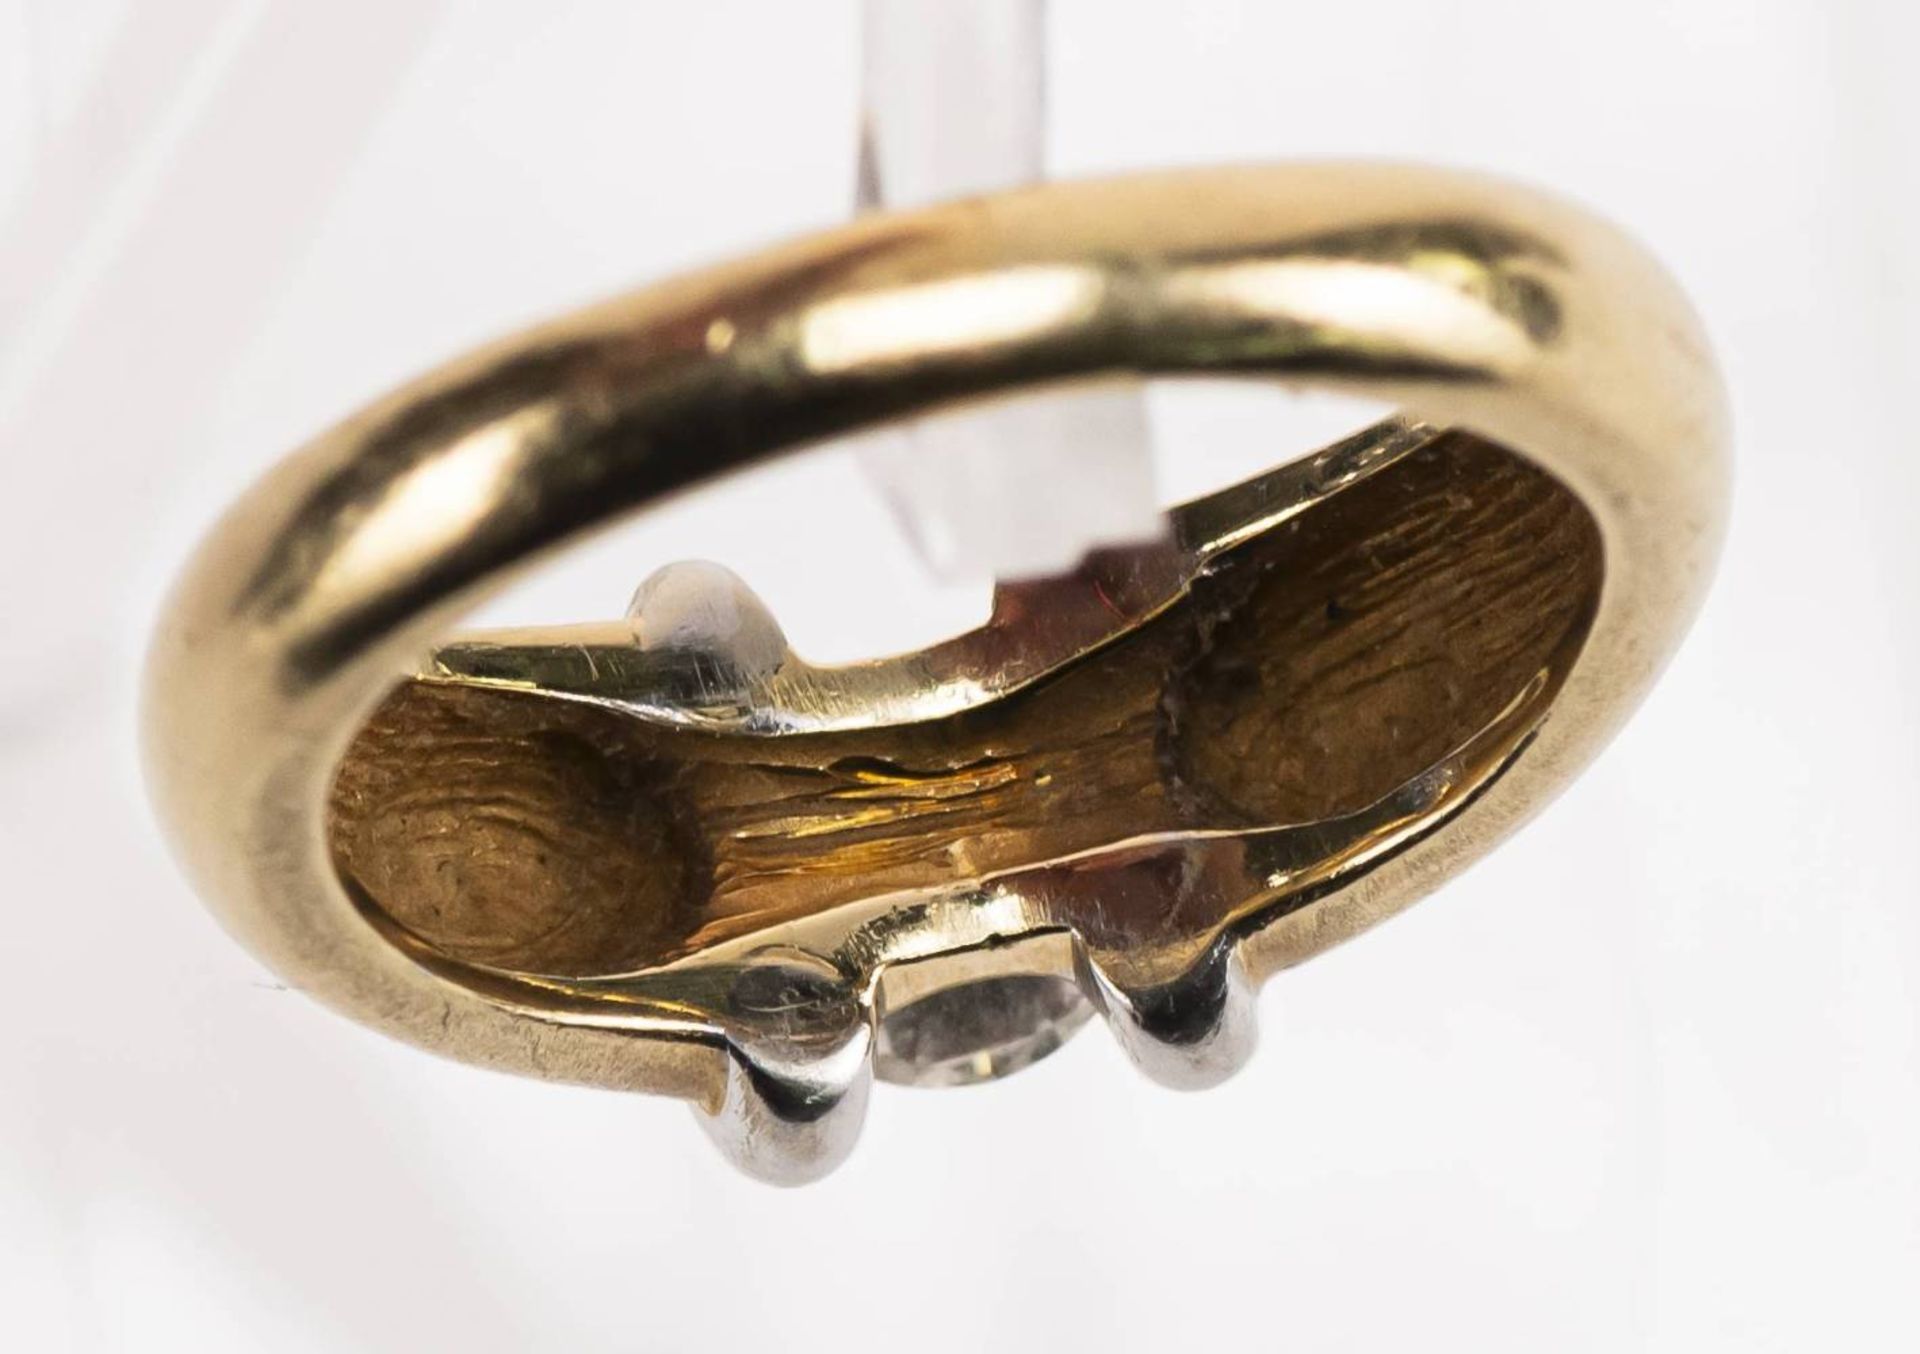 Brillant Ring, 585 Gold, bicolor, Brillant ca. 0,6ct, RW 54, ca. 6,99g. - Bild 6 aus 6